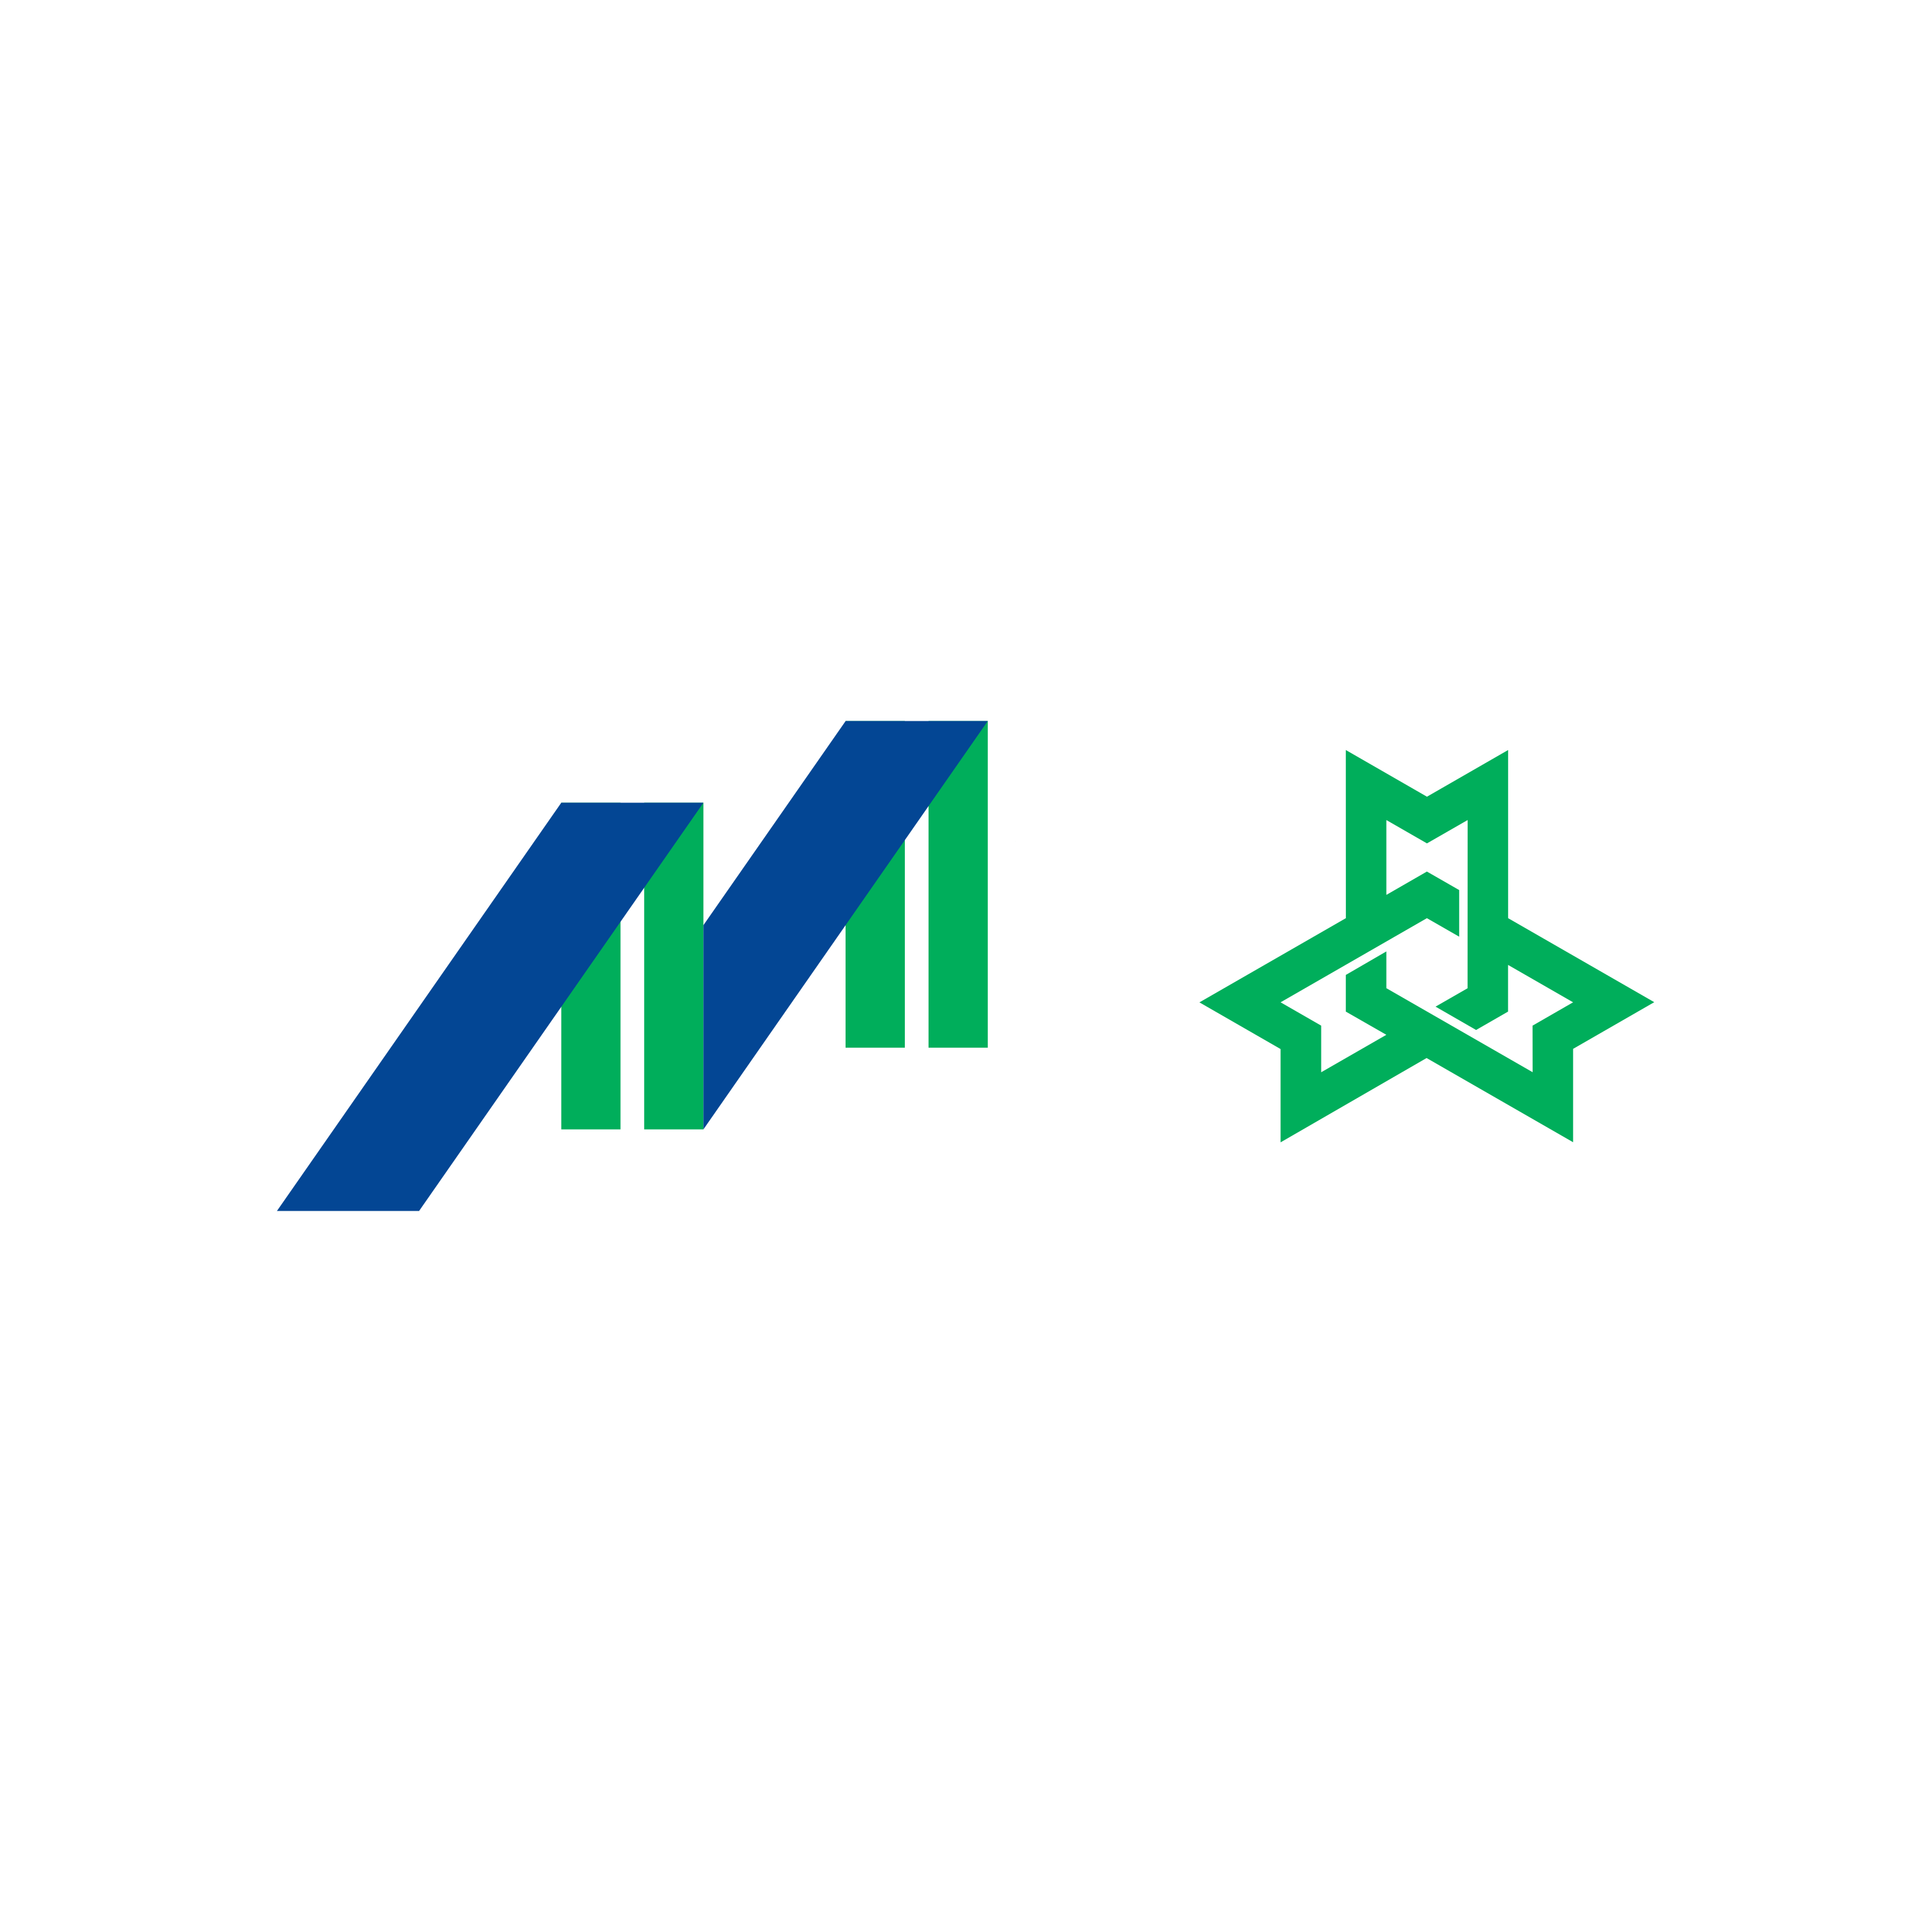 MMMOCL MMRDA Logo  Transparent Image